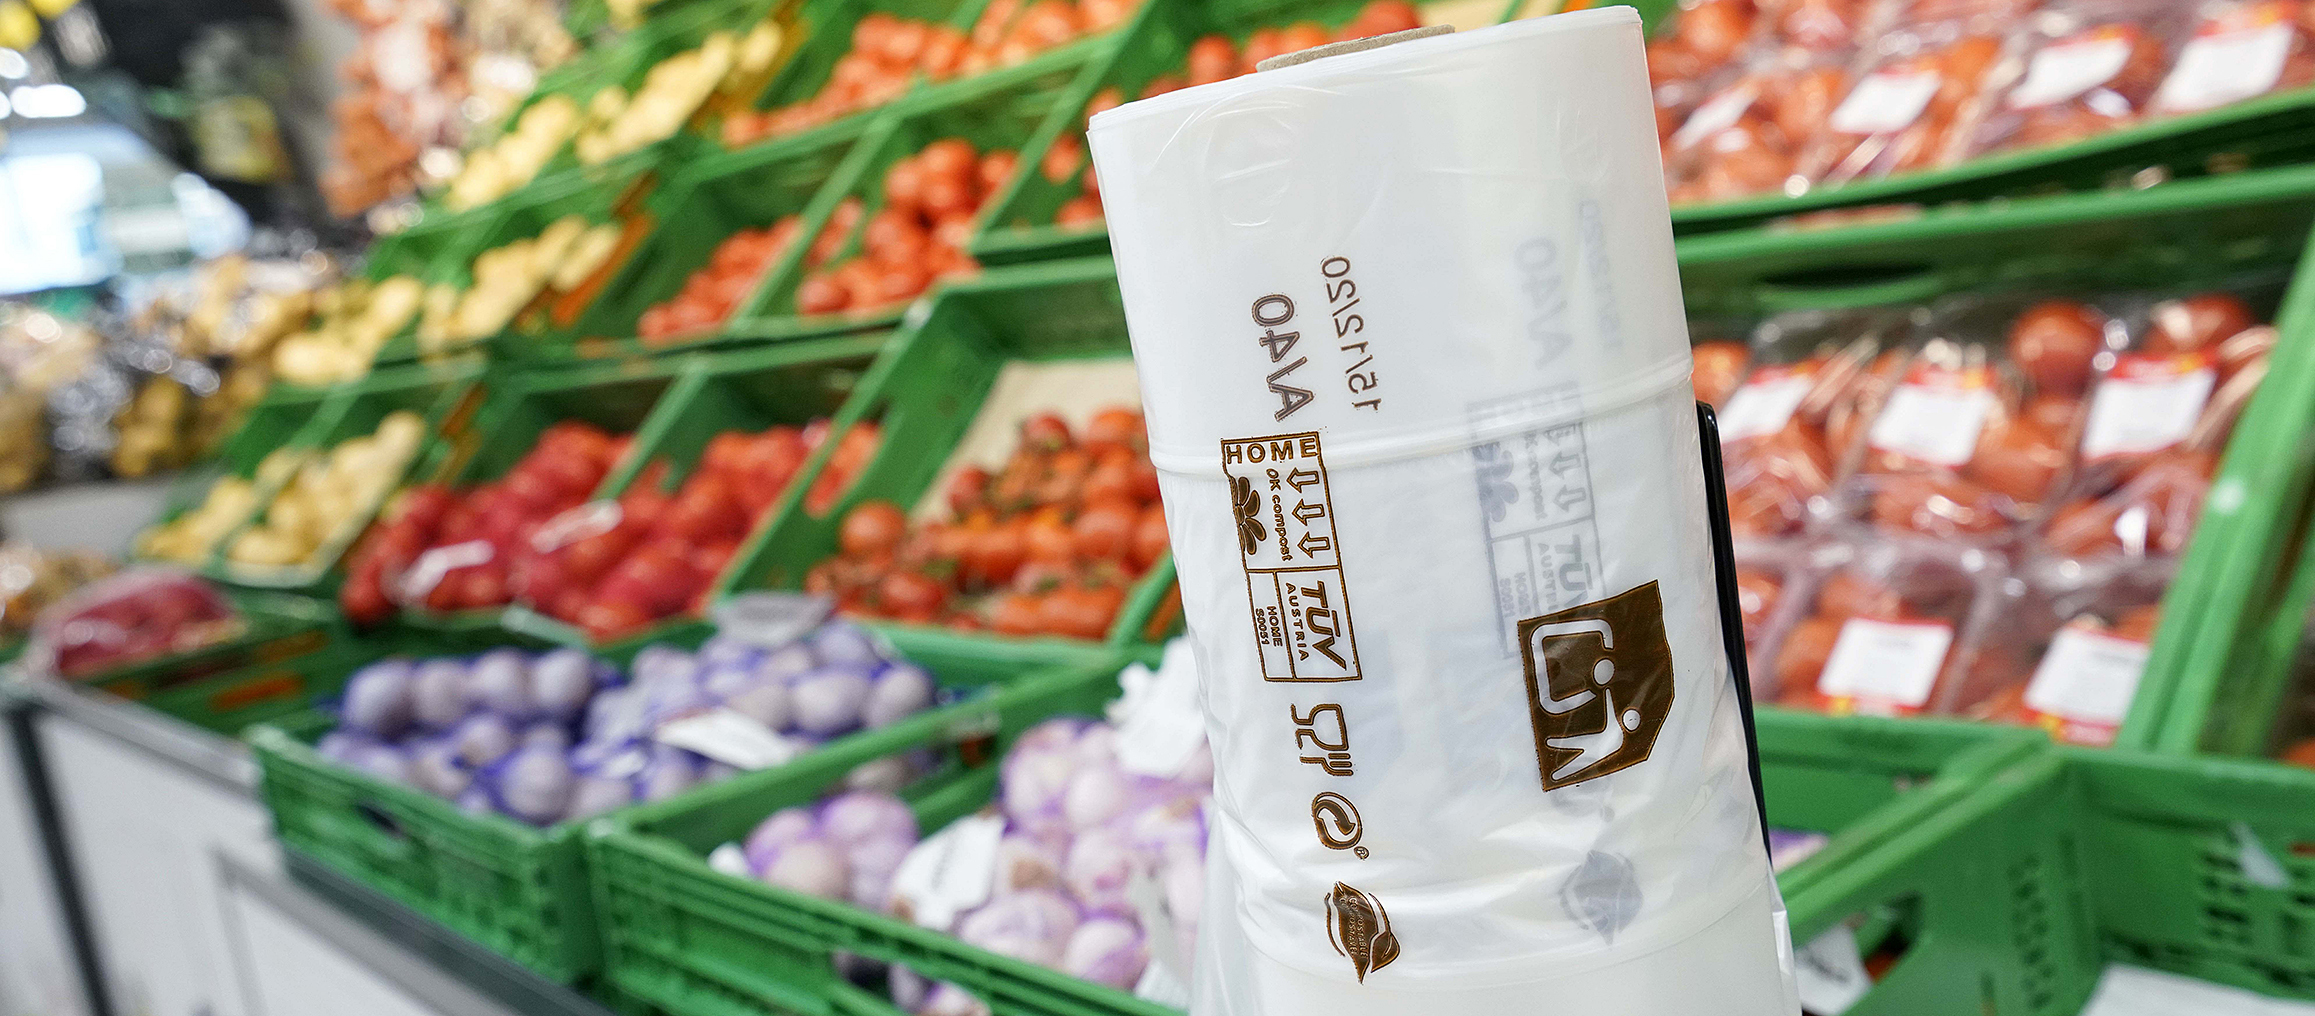 En la seccin de frutas y verduras tambin se dispone de bolsas compostables, eliminando as las bolsas de solo un uso de todos sus supermercados.